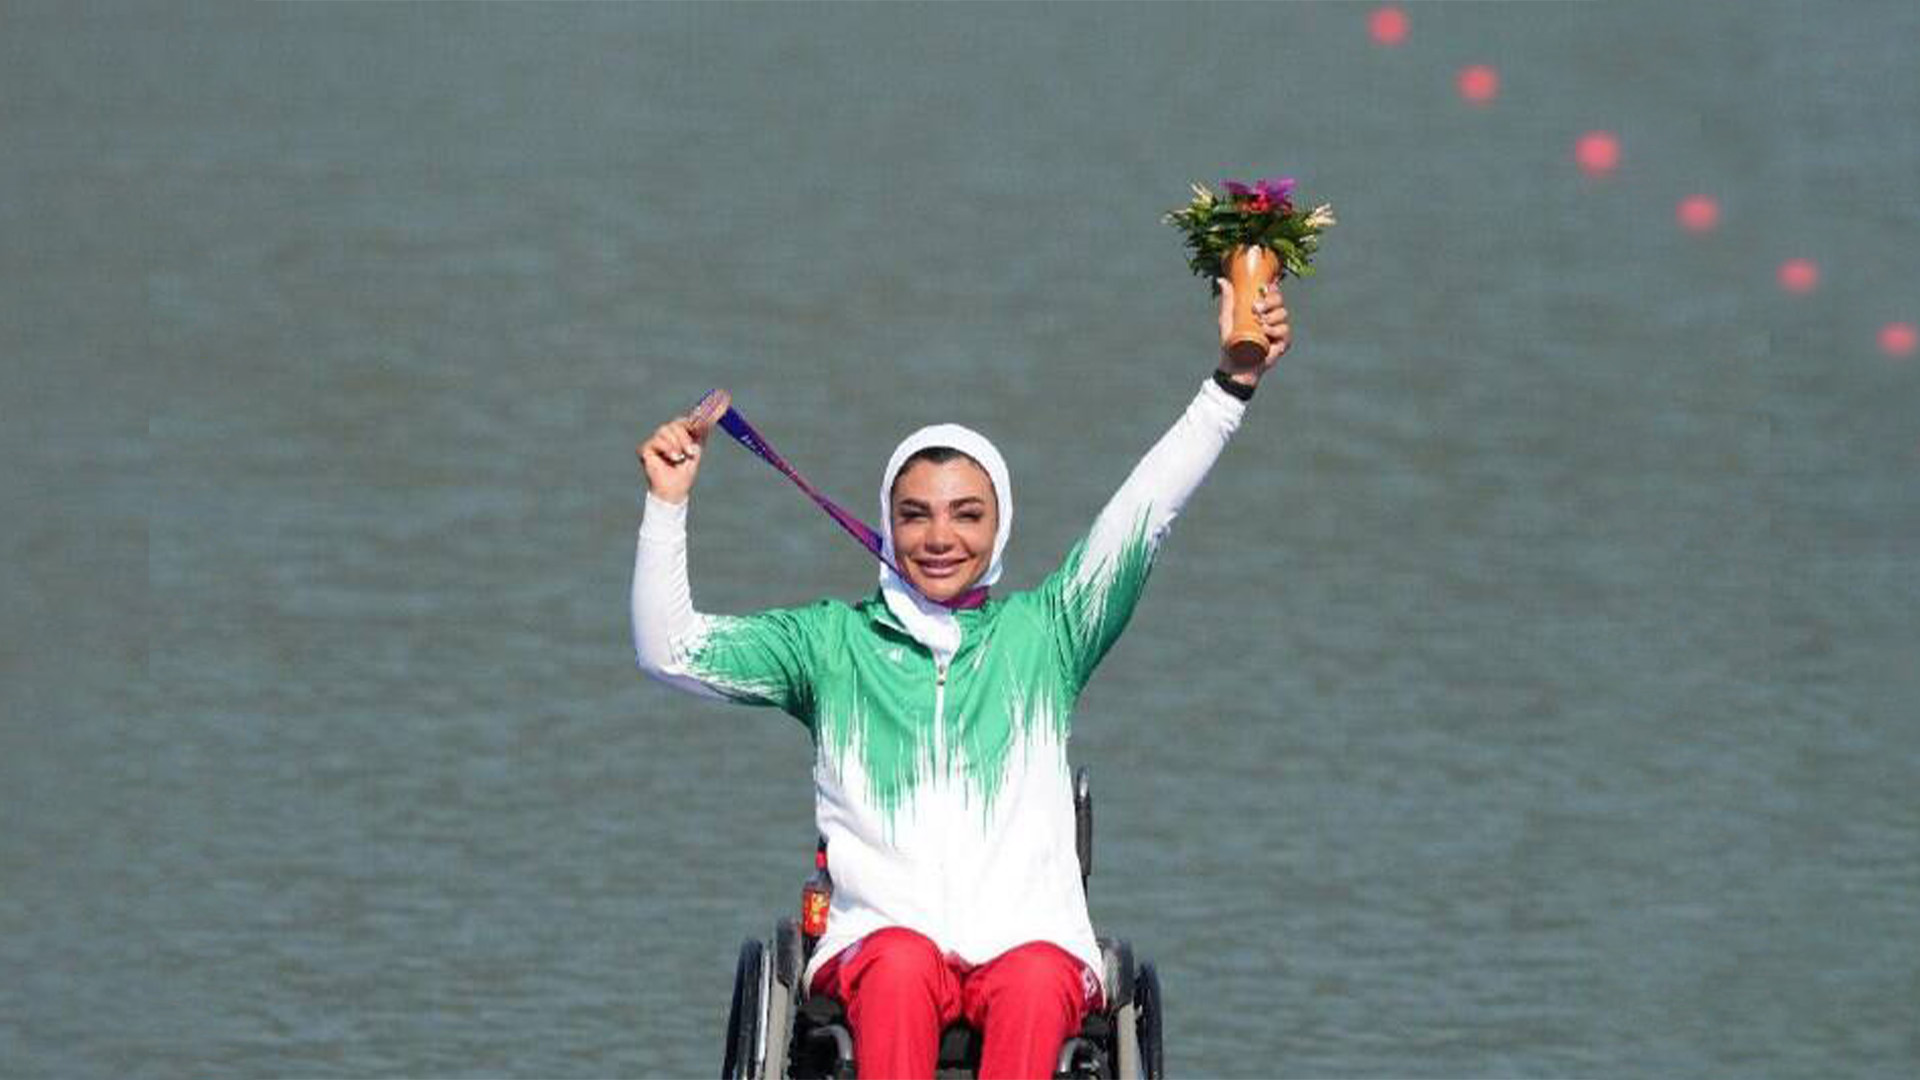 کسب اولین مدال کاروان ایران در پارا آسیایی هانگژو توسط سارا عبدالملکی دختر قهرمان محمدشهری